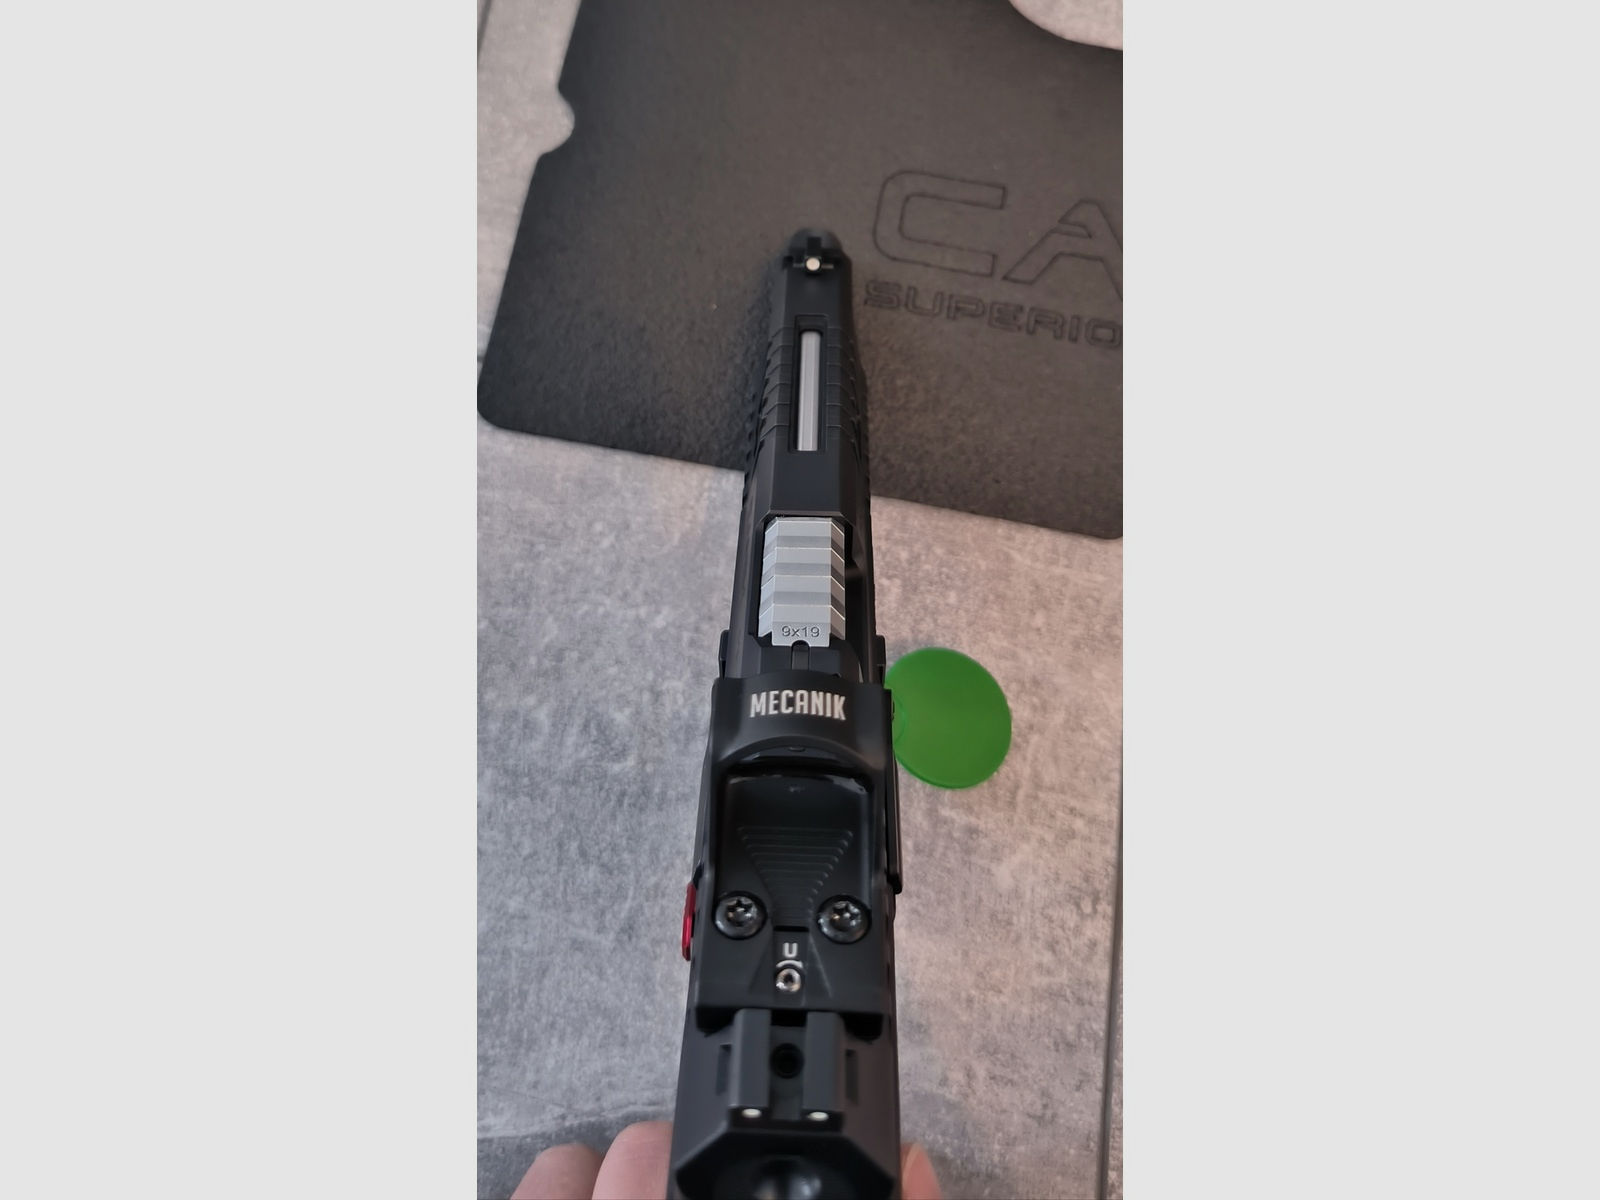 Canik TP9 SFX Mete Pro Set 9mm Luger